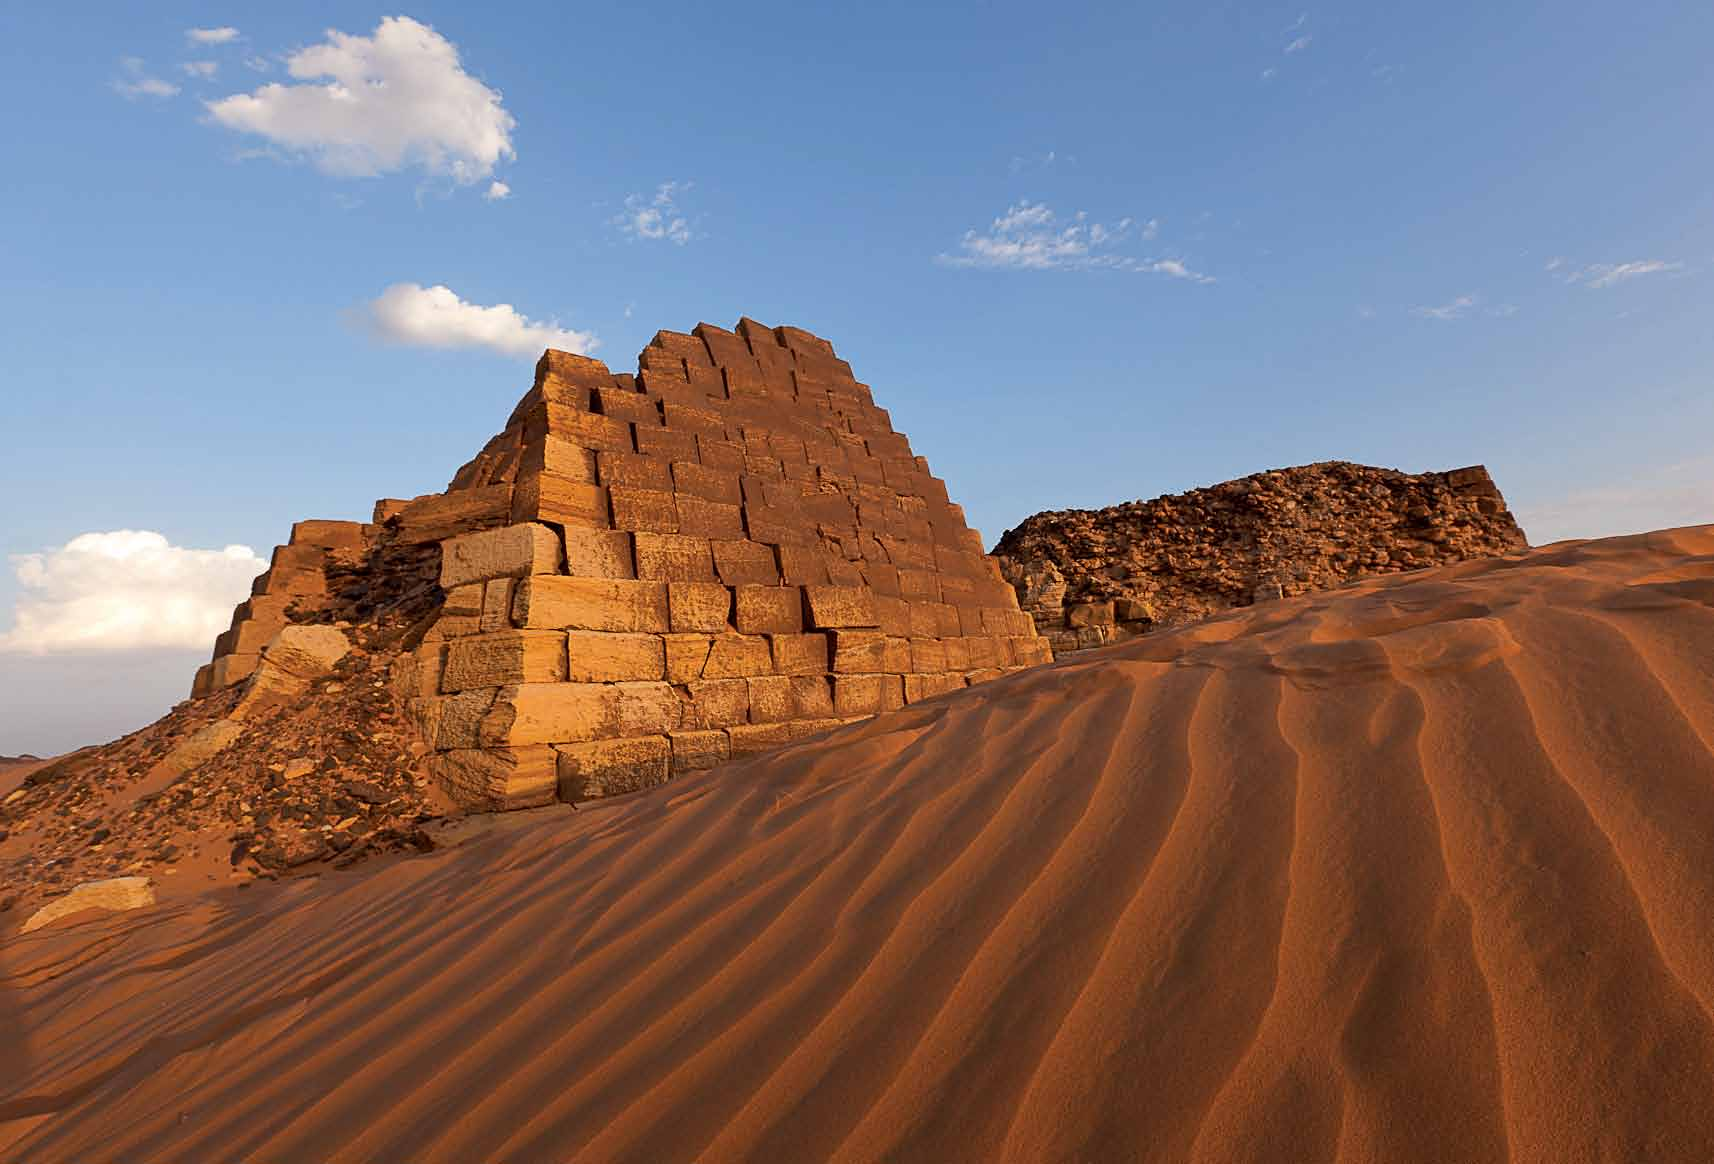 Le Necropoli dell antica Meroe localizzate nel deserto a circa 3 km dal Nilo su alcune colline di sabbia, con, in particolare, una piramide della Necropoli Sud.